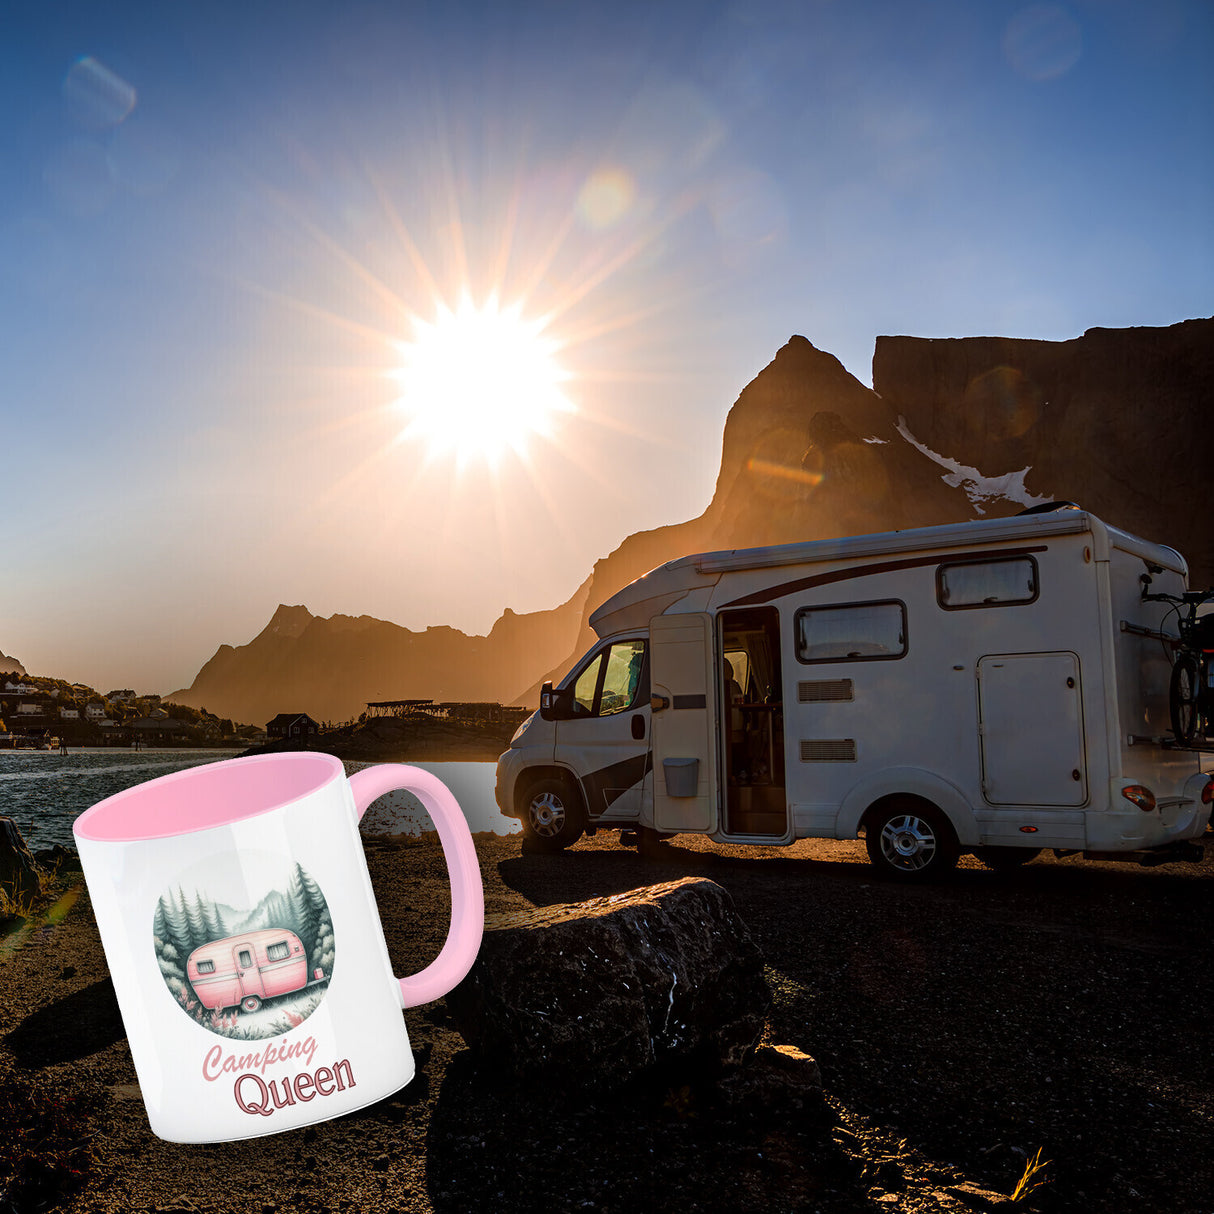 Camping Queen Wohnwagen Kaffeebecher